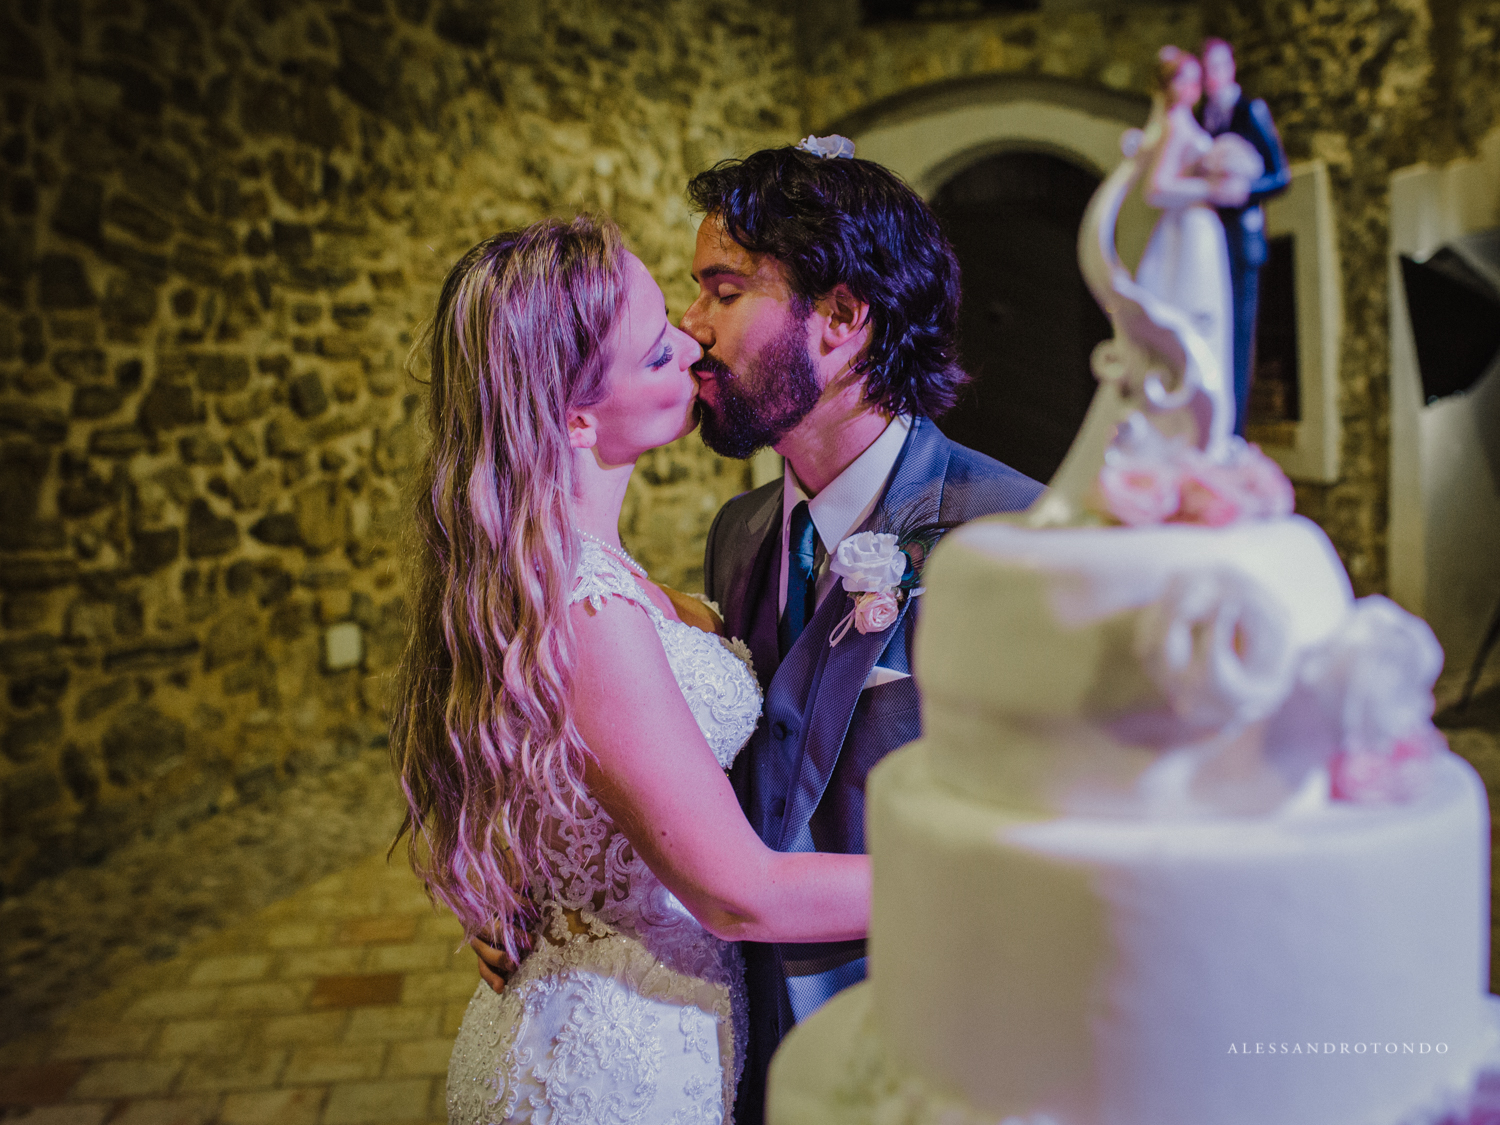 Fotografo di matrimoni reportage sicilia Agrigento porto Empedocle Alesssandro Tondo 2G3A9113